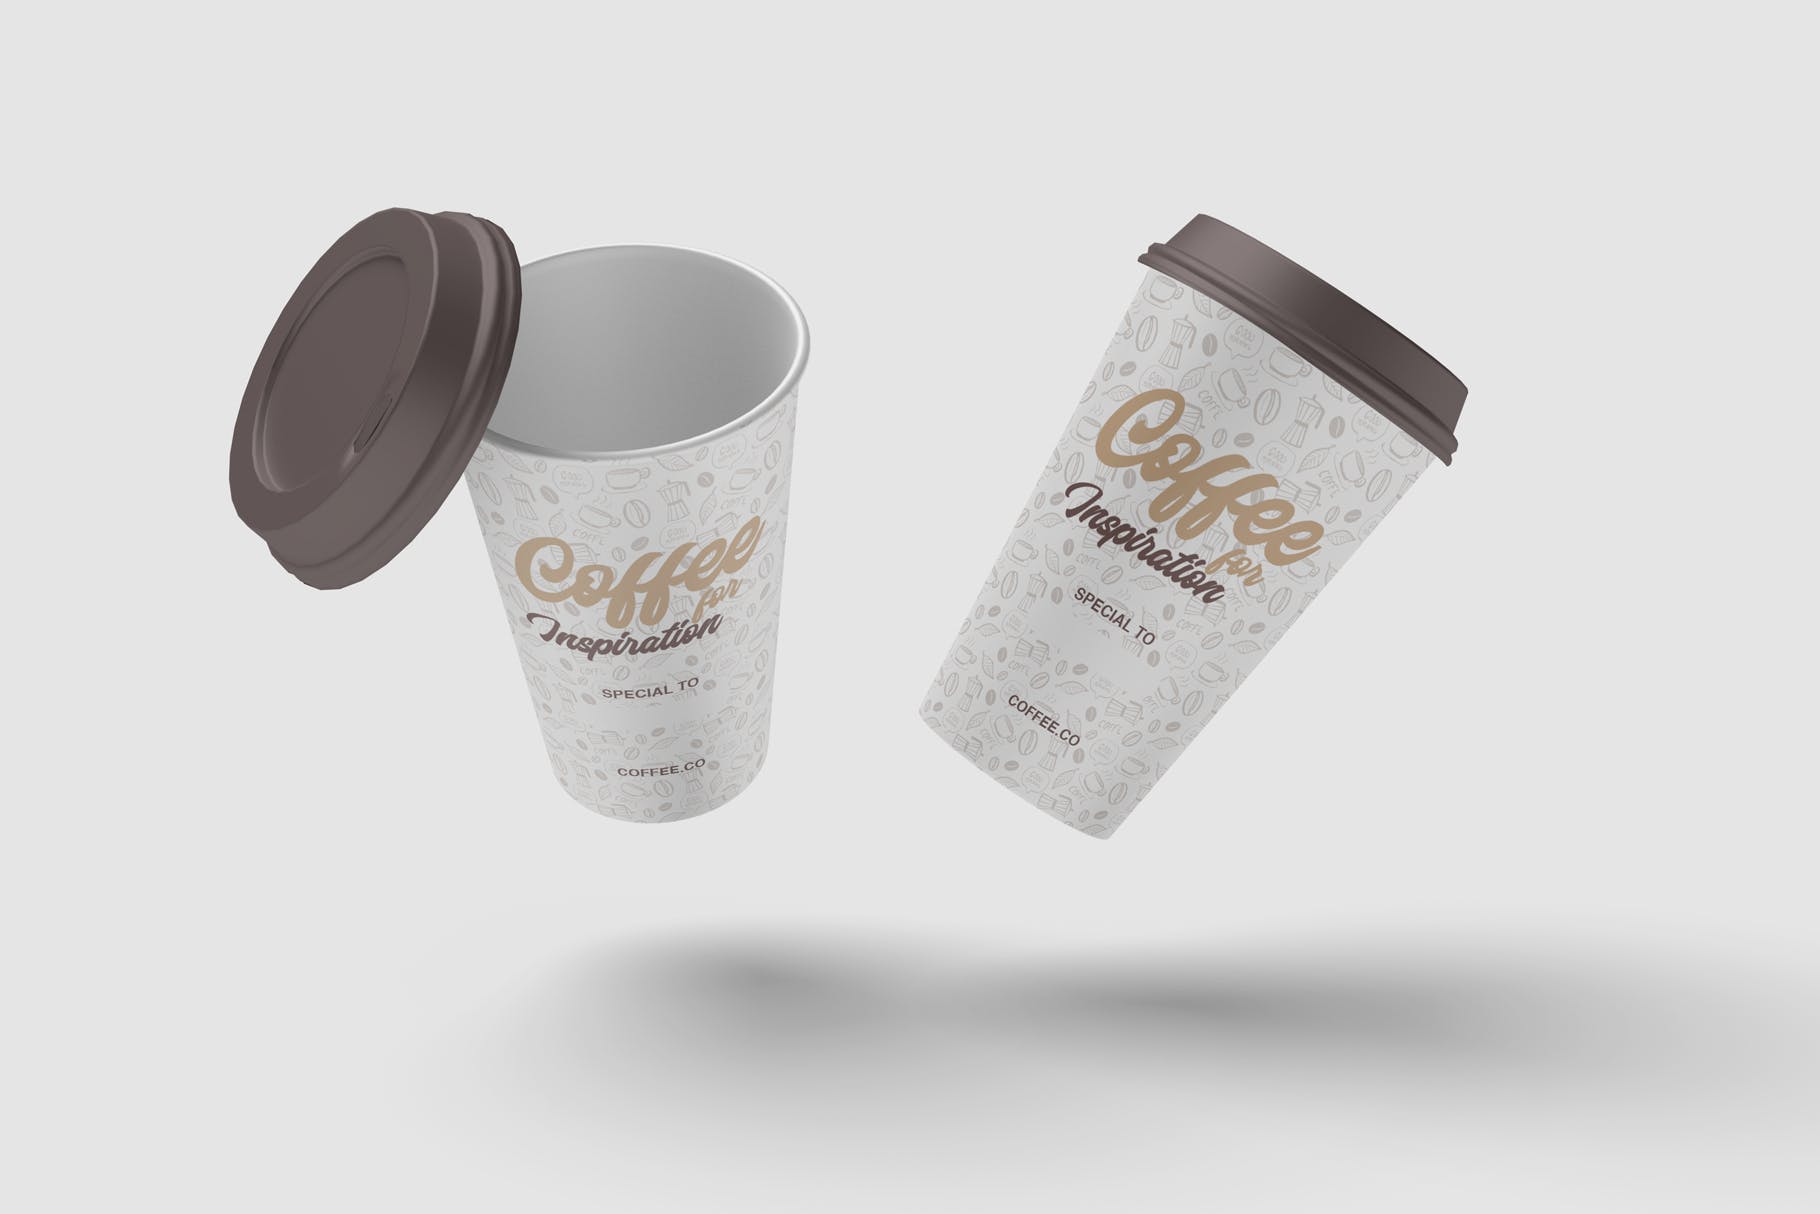 咖啡纸杯外观图案设计预览16图库精选 Cup of Coffee Mockup插图(3)